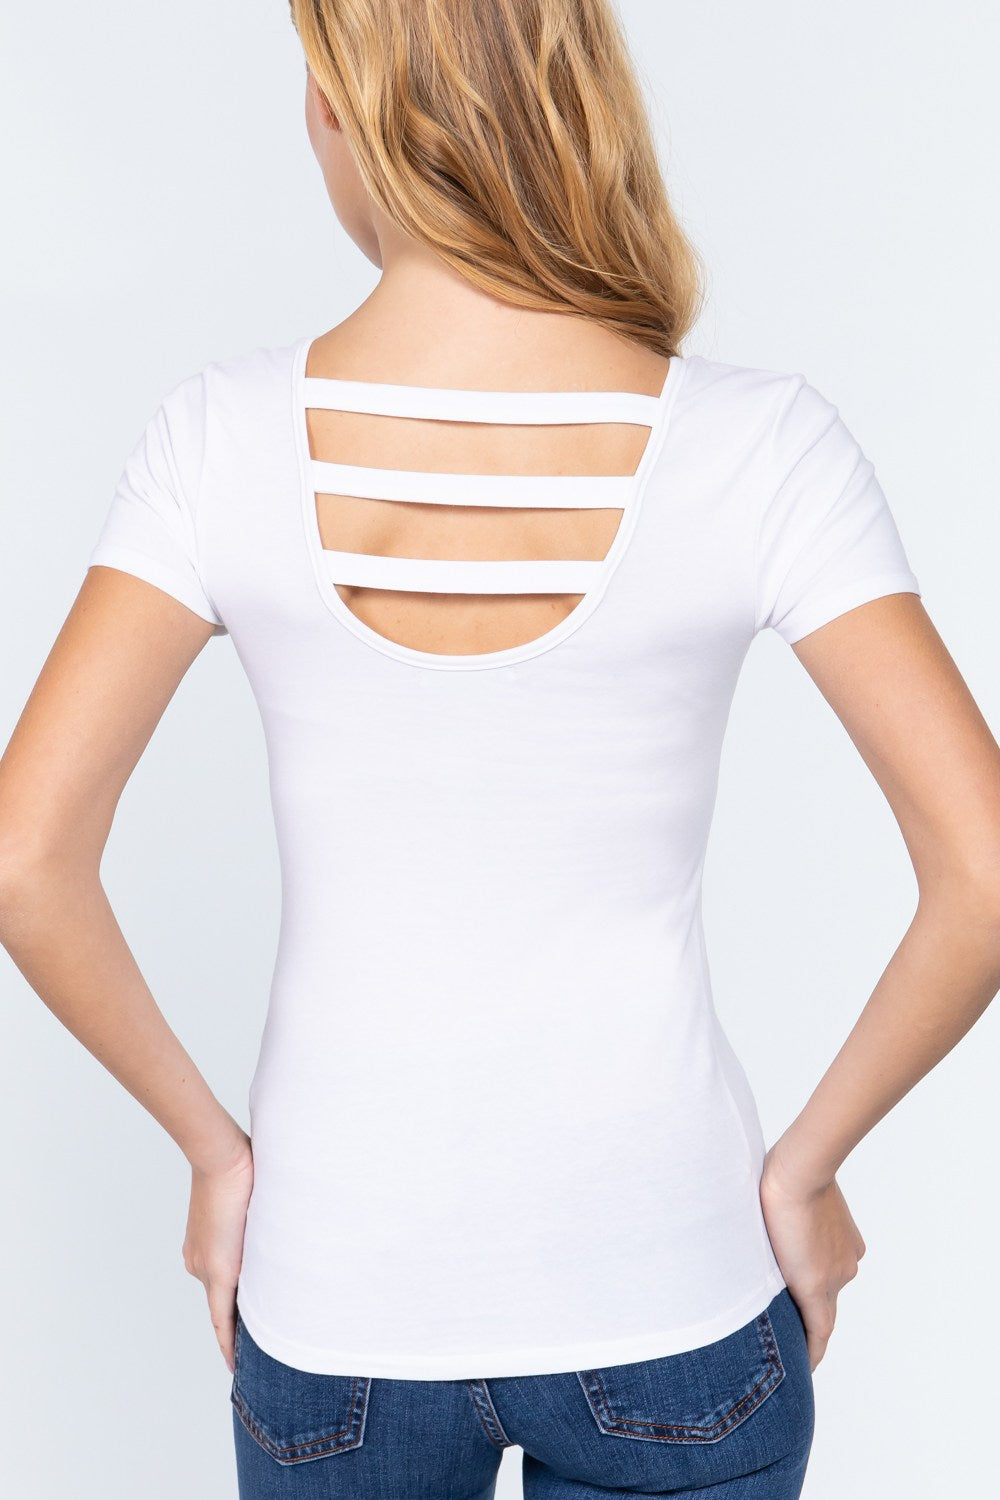 White Short Sleeve Top Zipper Women's Shirt